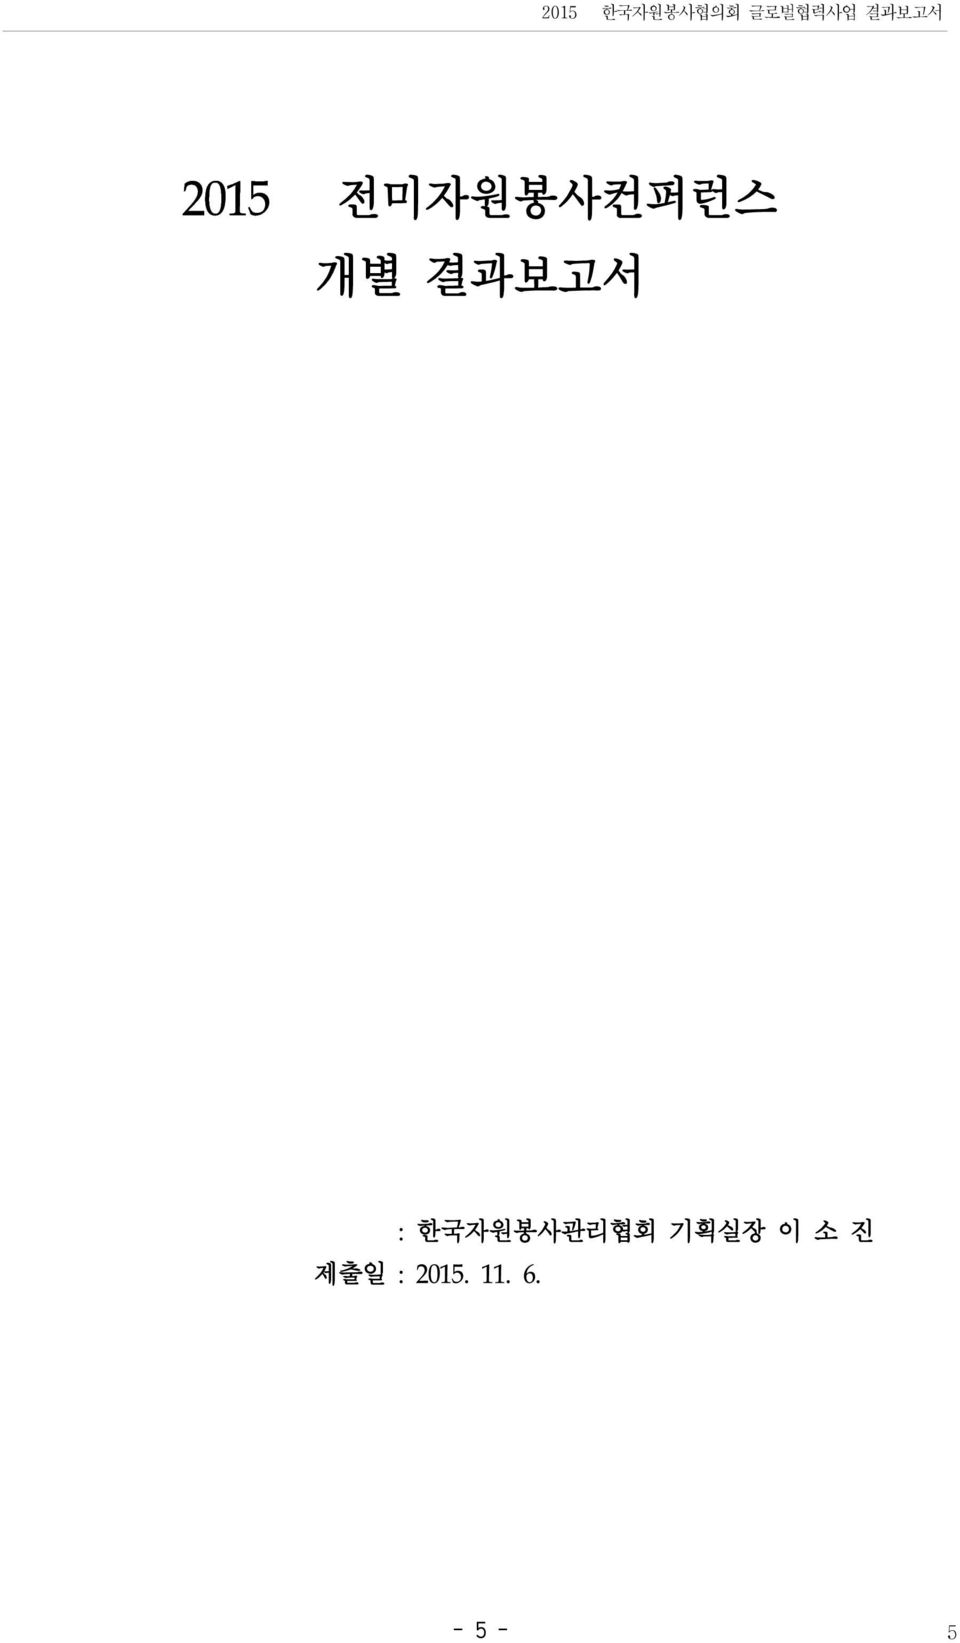 결과보고서 : 한국자원봉사관리협회 기획실장 이